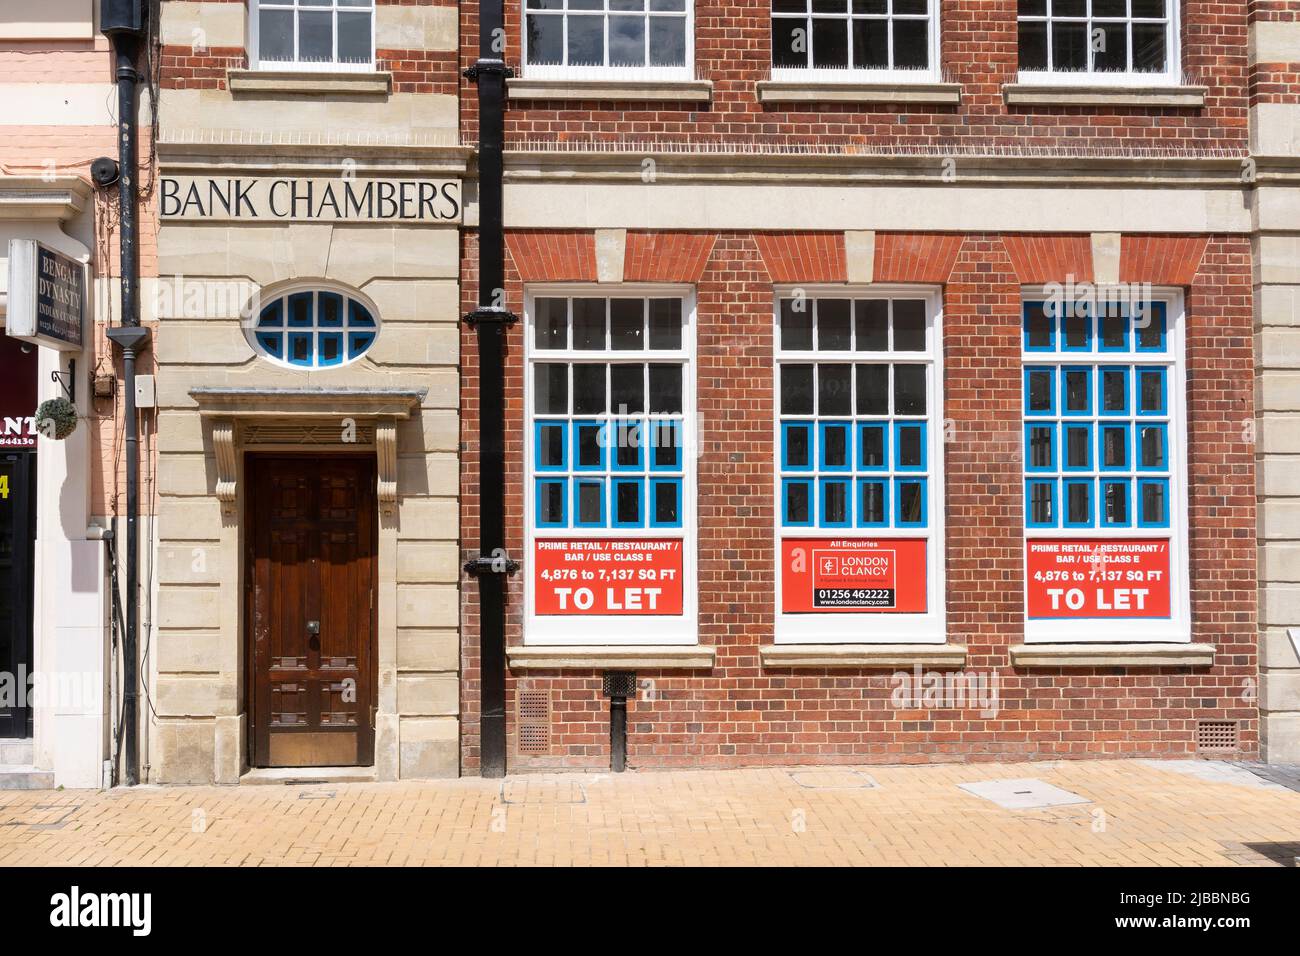 L'ancienne succursale de Lloyds est vide, car une autre banque réduit les succursales dans la rue en raison de l'évolution du comportement des clients. Basingstoke, Royaume-Uni Banque D'Images